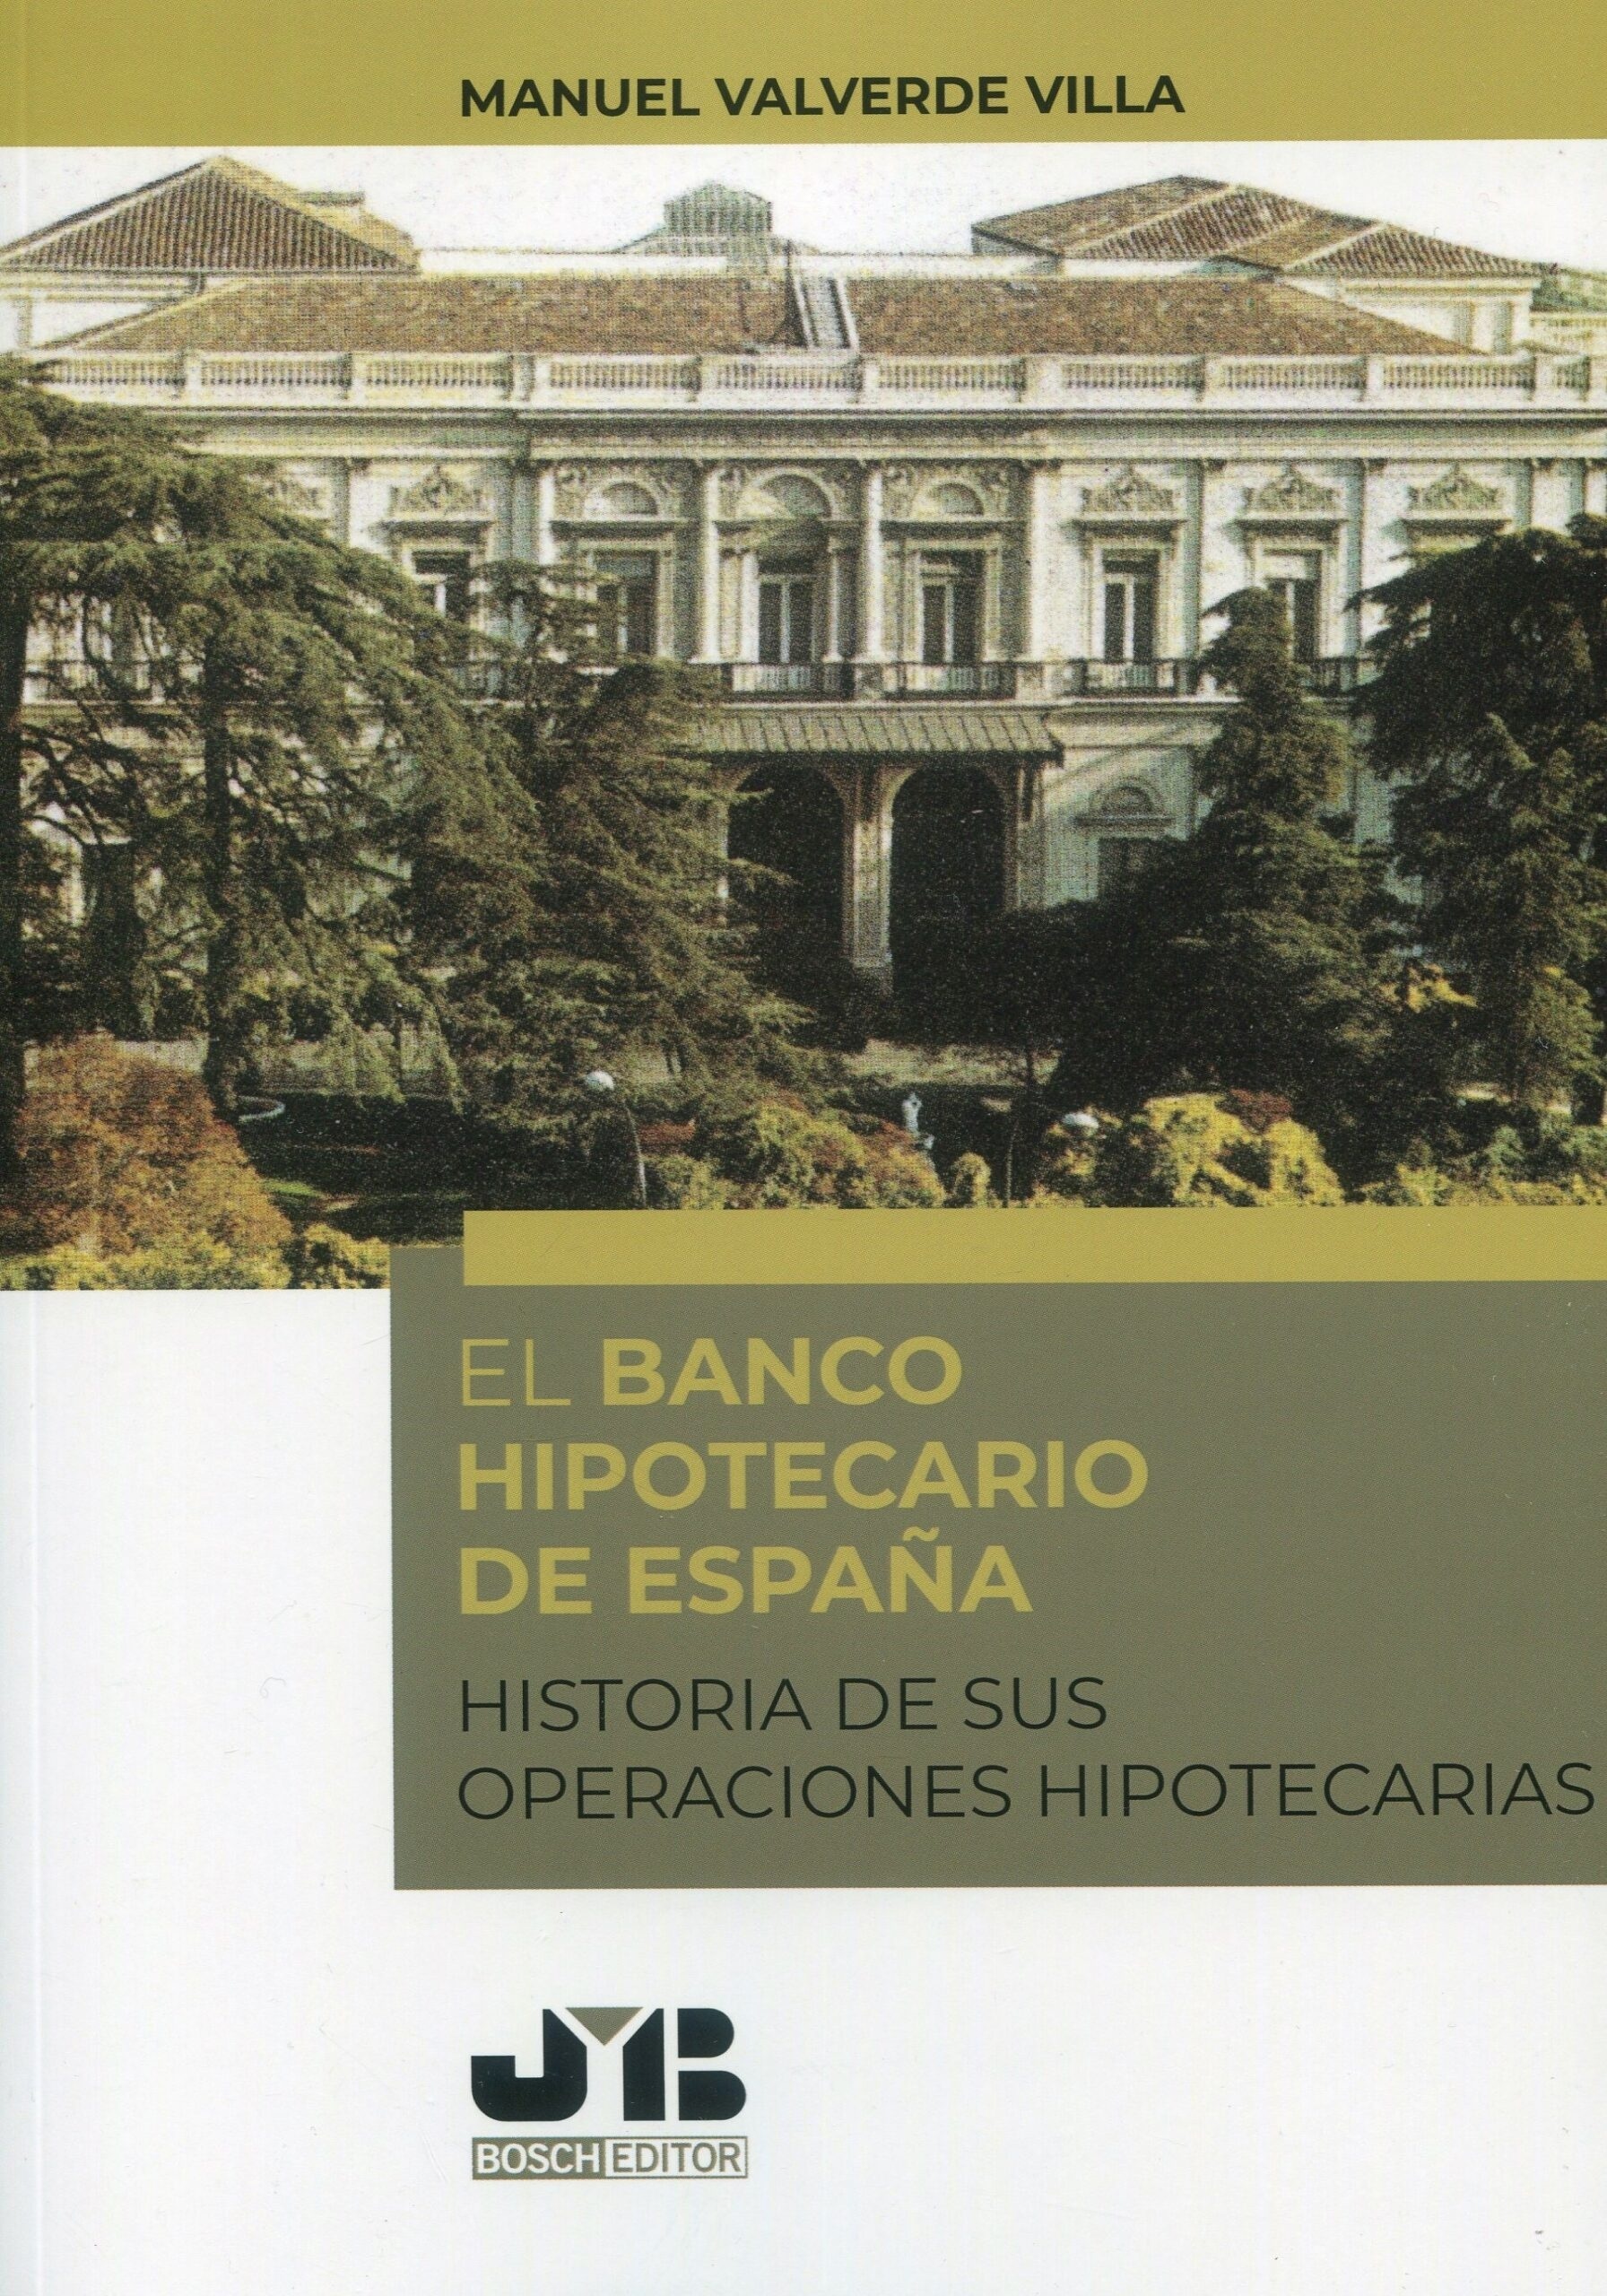 Banco Hipotecario de España. Historia de sus operaciones hipotecarias "Historia de sus operaciones hipotecarias"